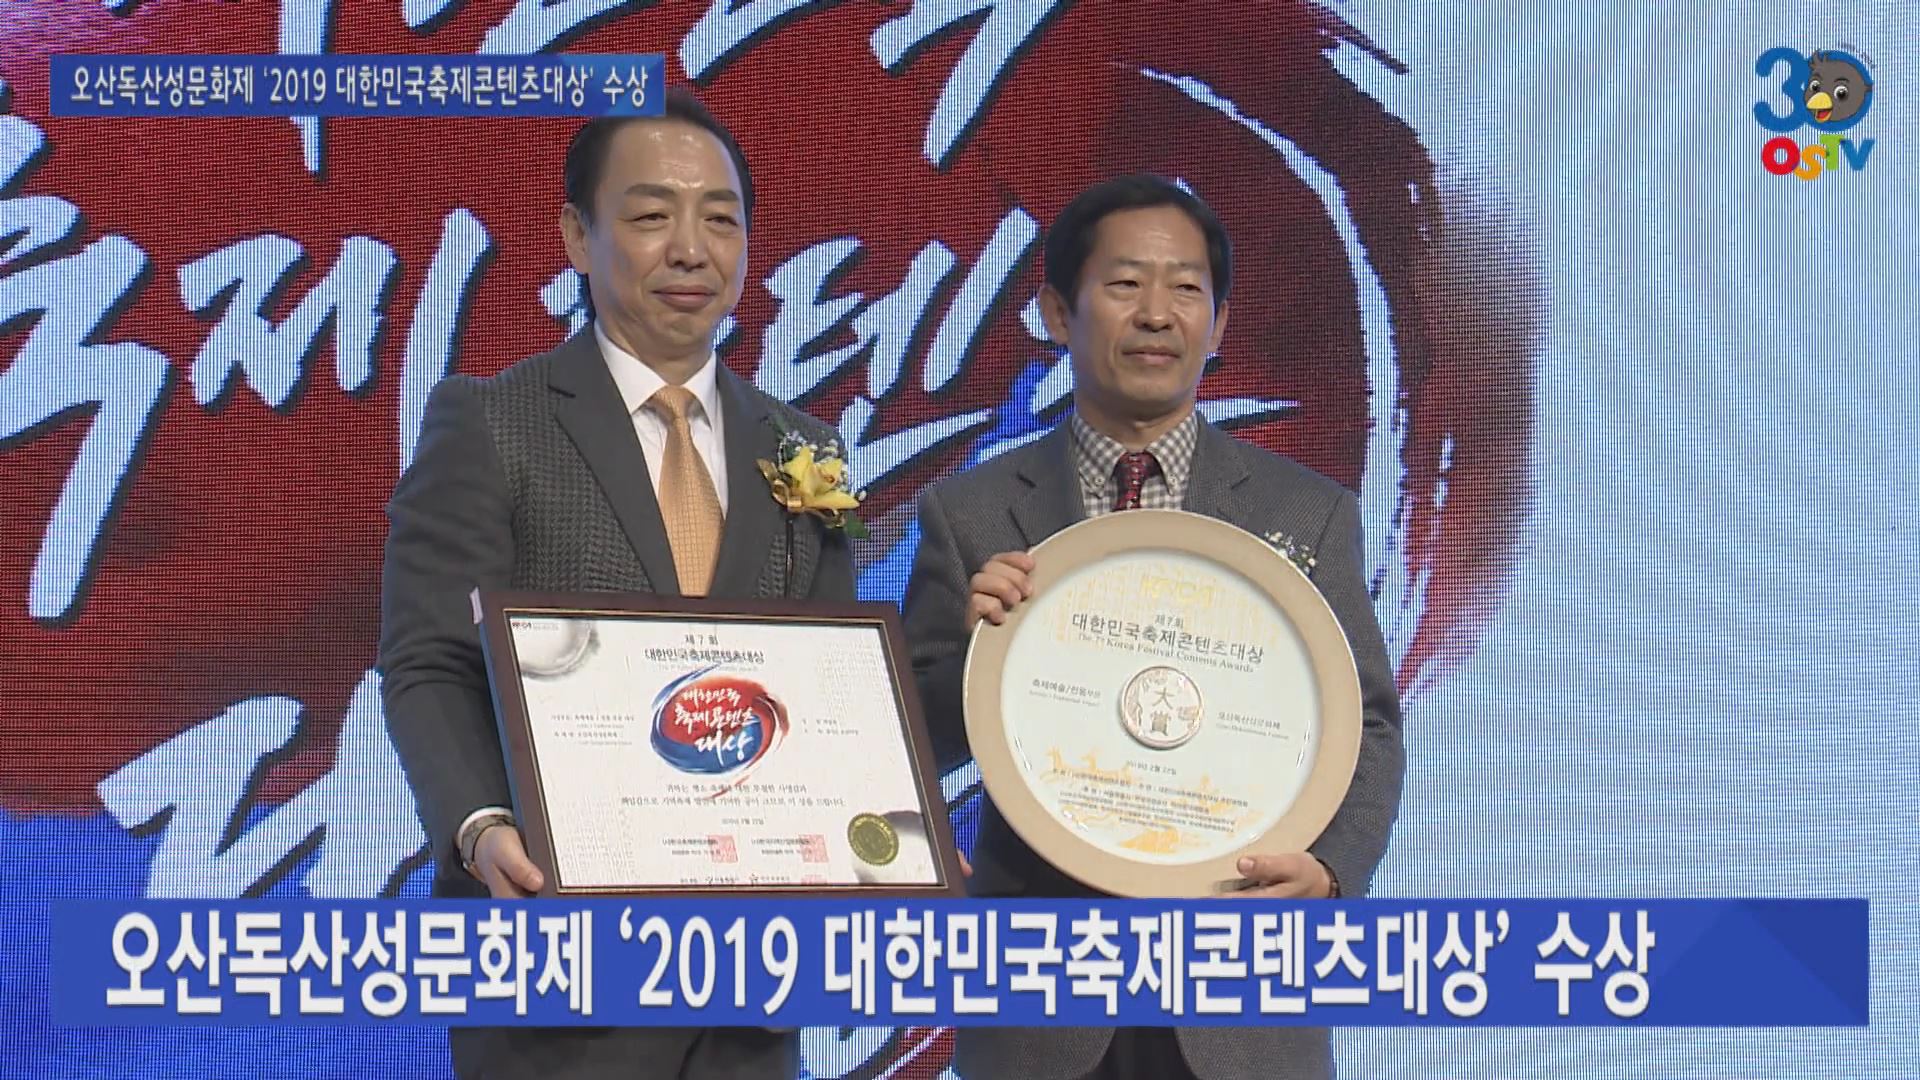 오산독산성문화제 ‘2019 대한민국축제콘텐츠대상’ 수상